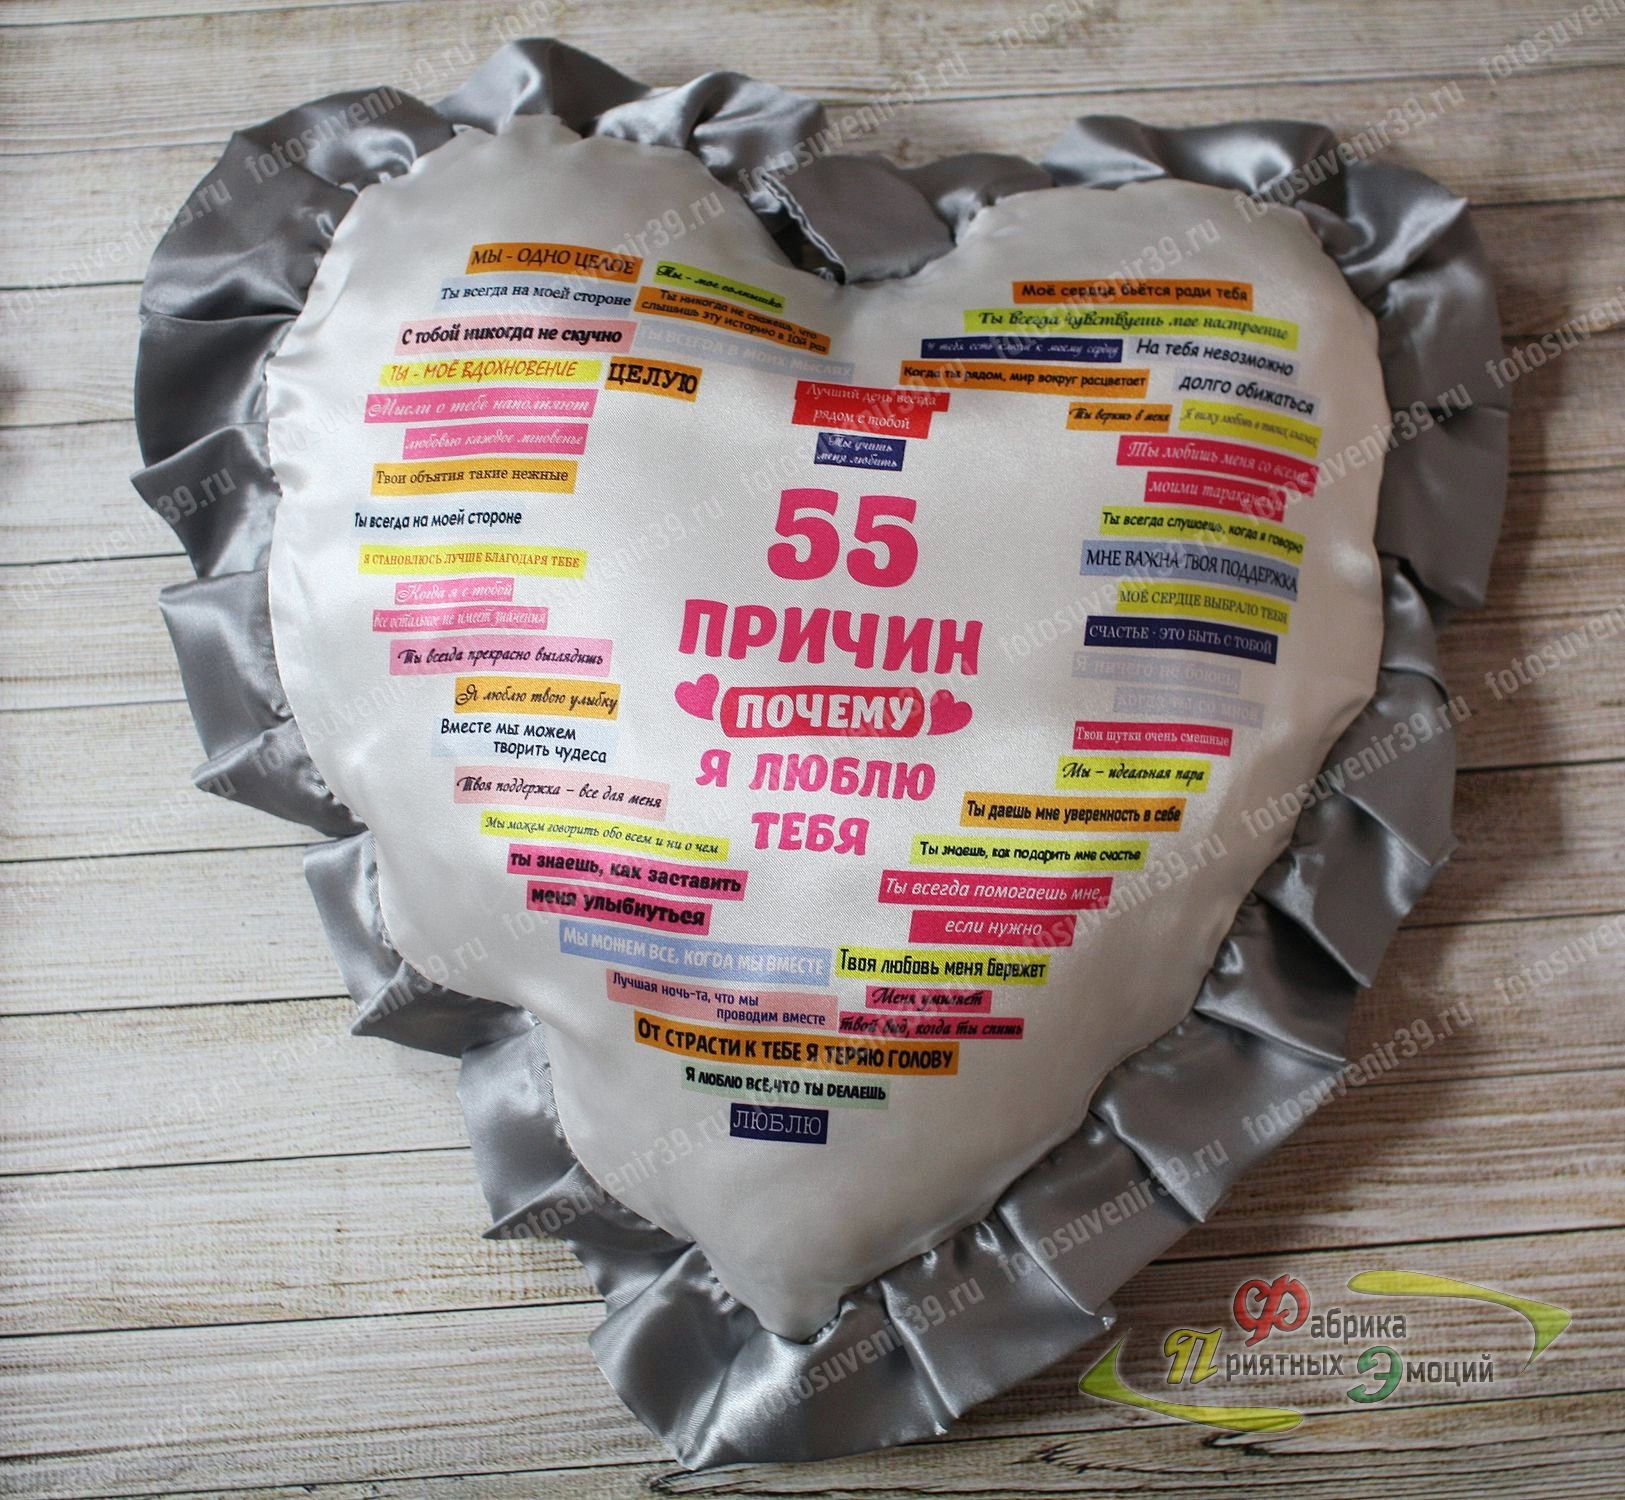 Подушка сувенирная 55 причин сердце с рюшей серебряного цвета